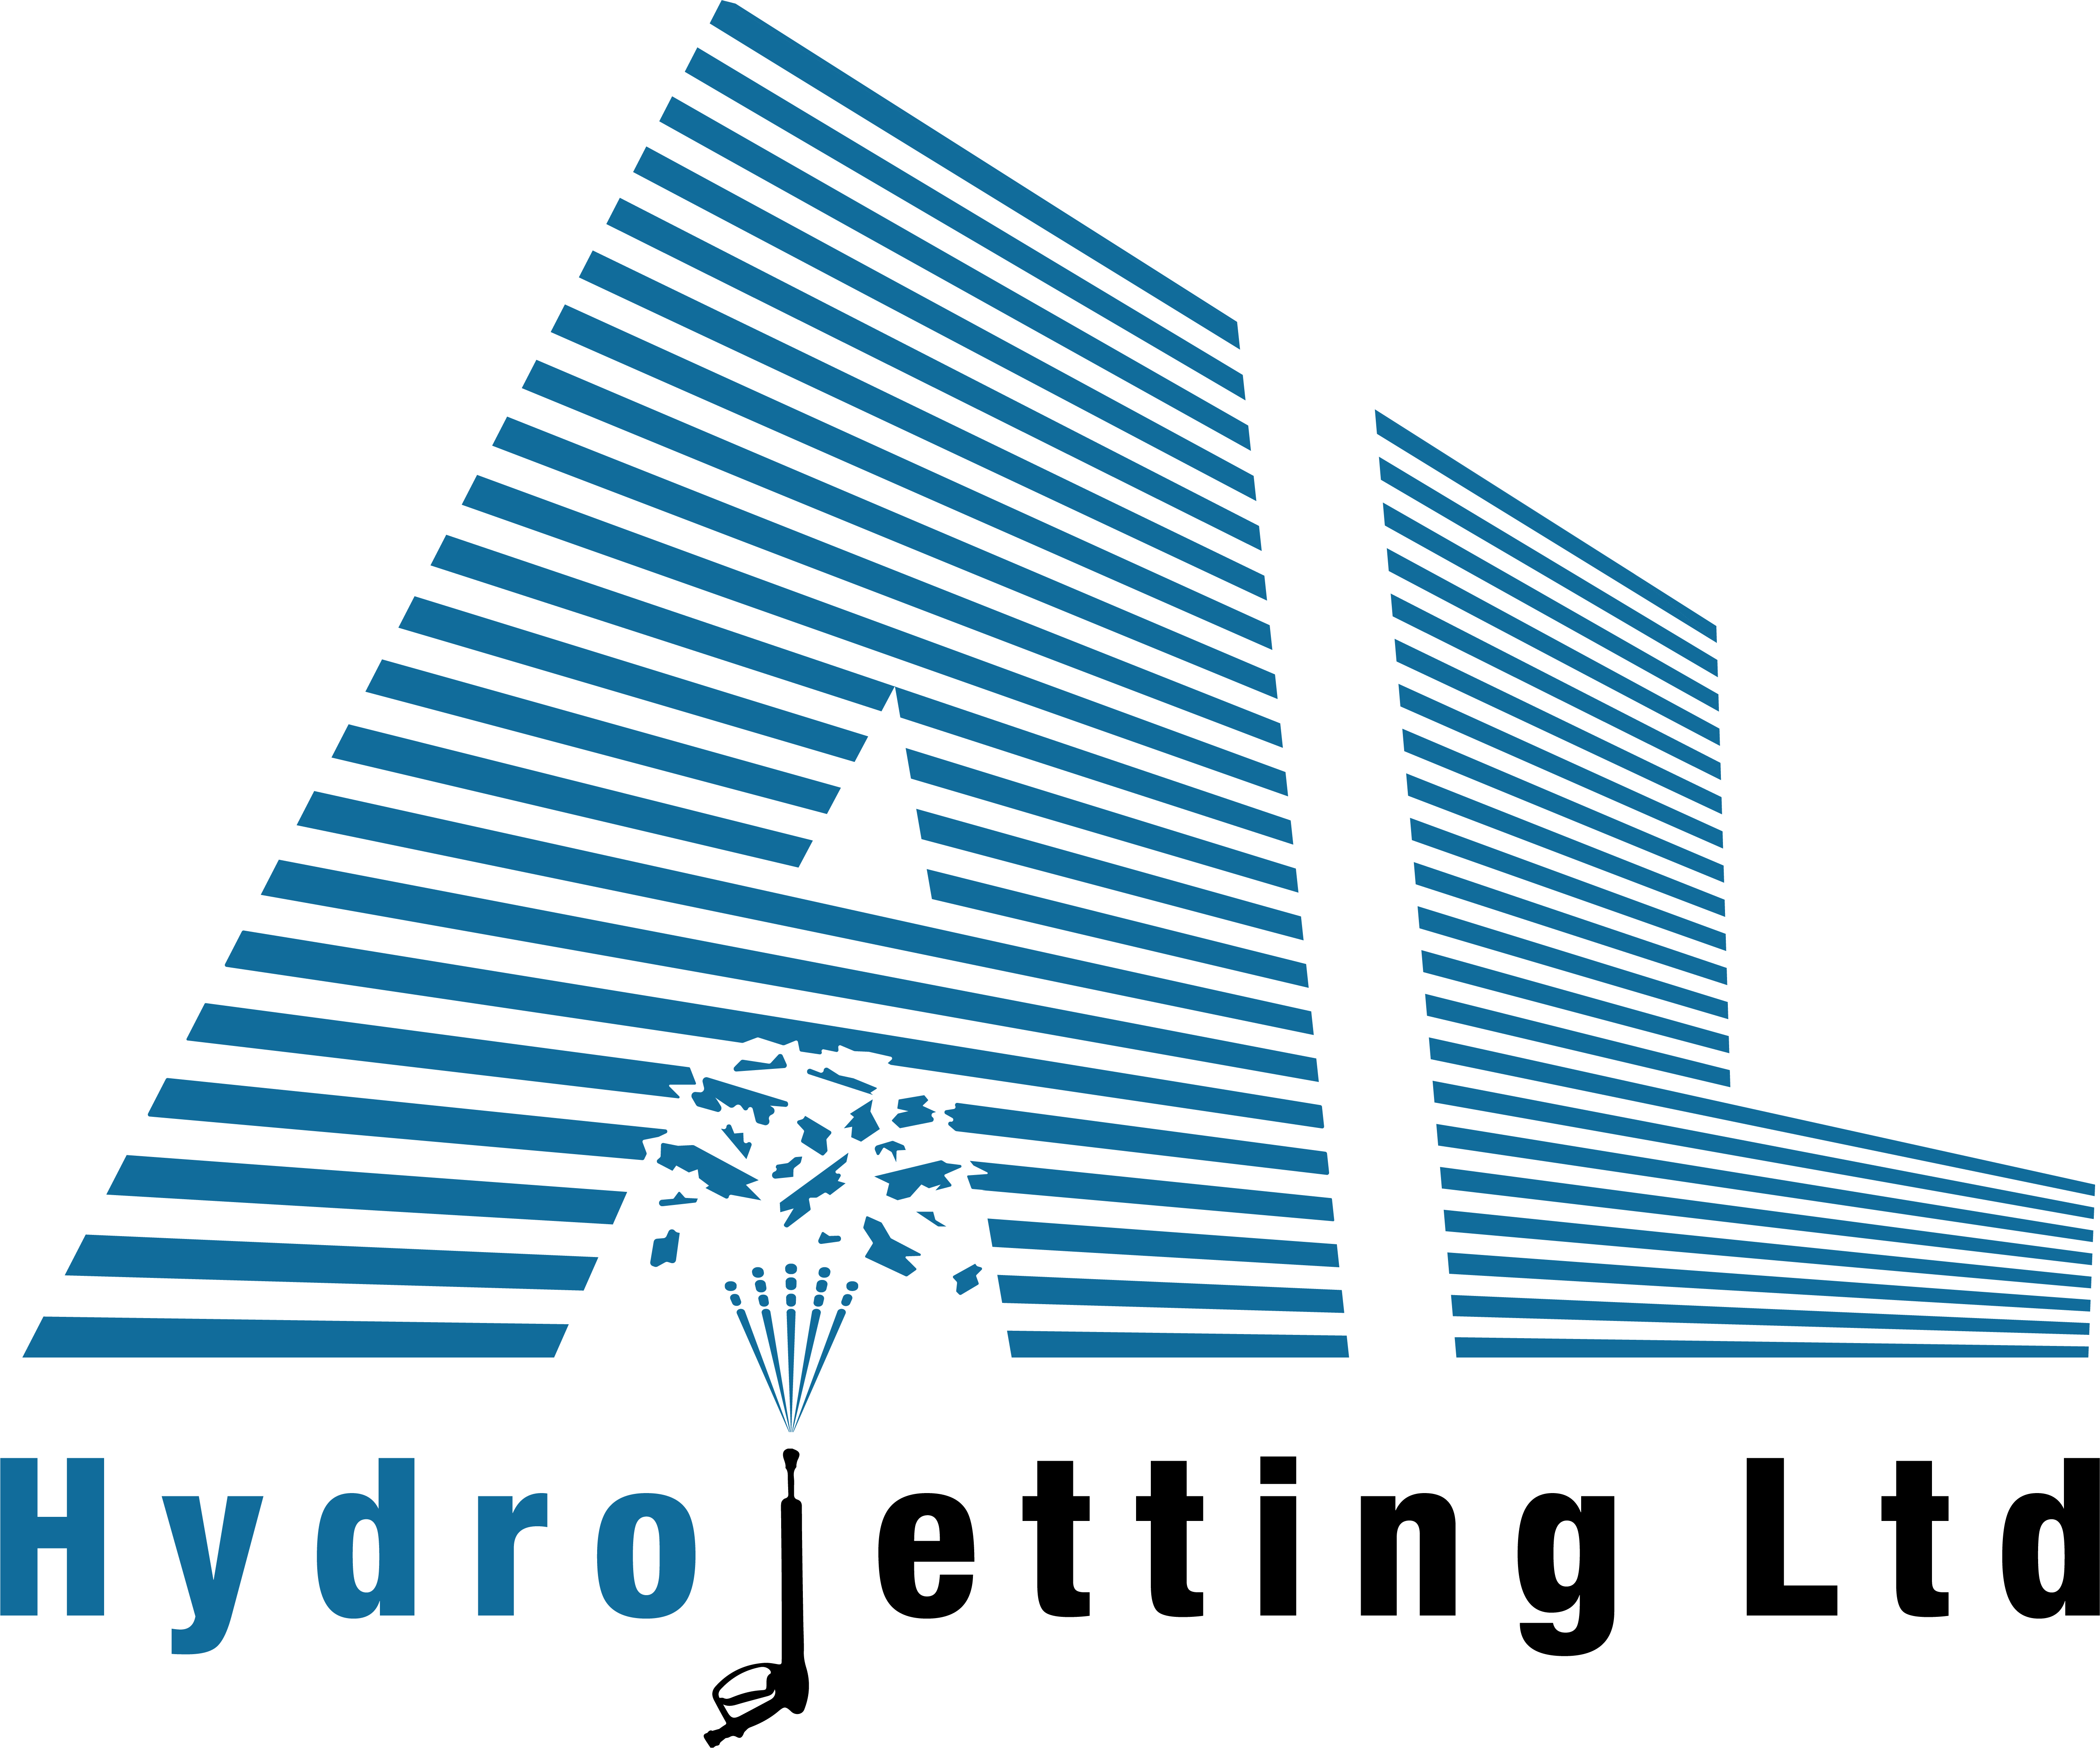 Al Hydrojetting Ltd